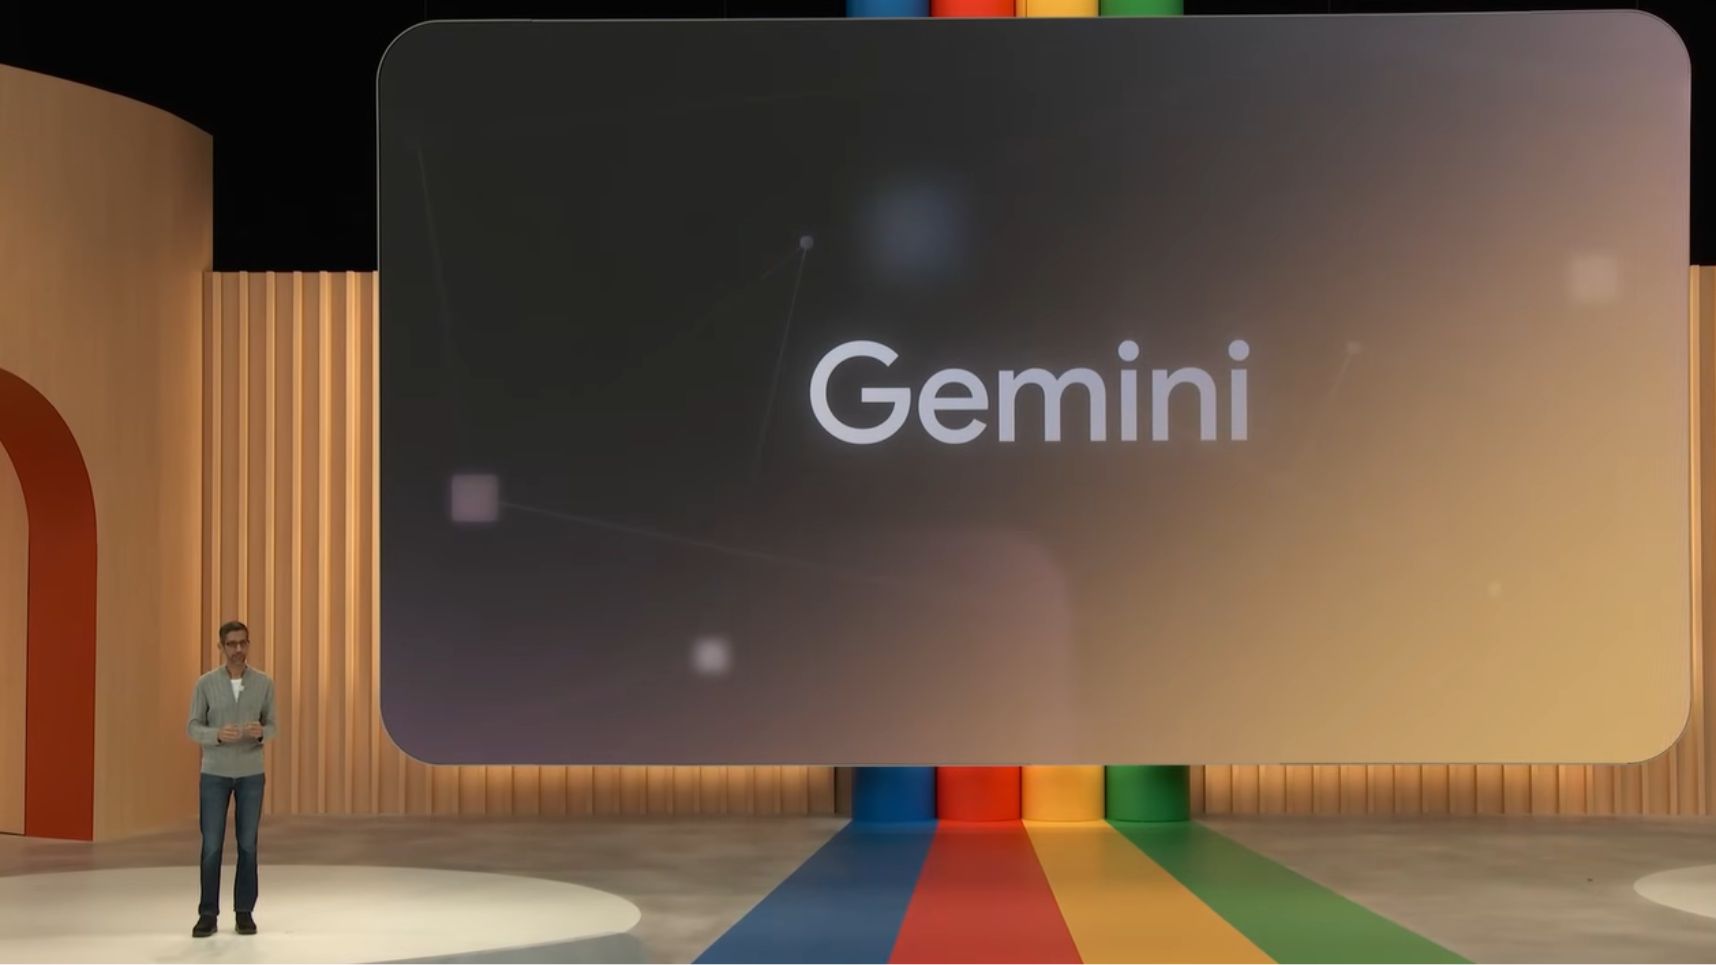 Google TPU v5p AI Chip Launches Alongside Gemini